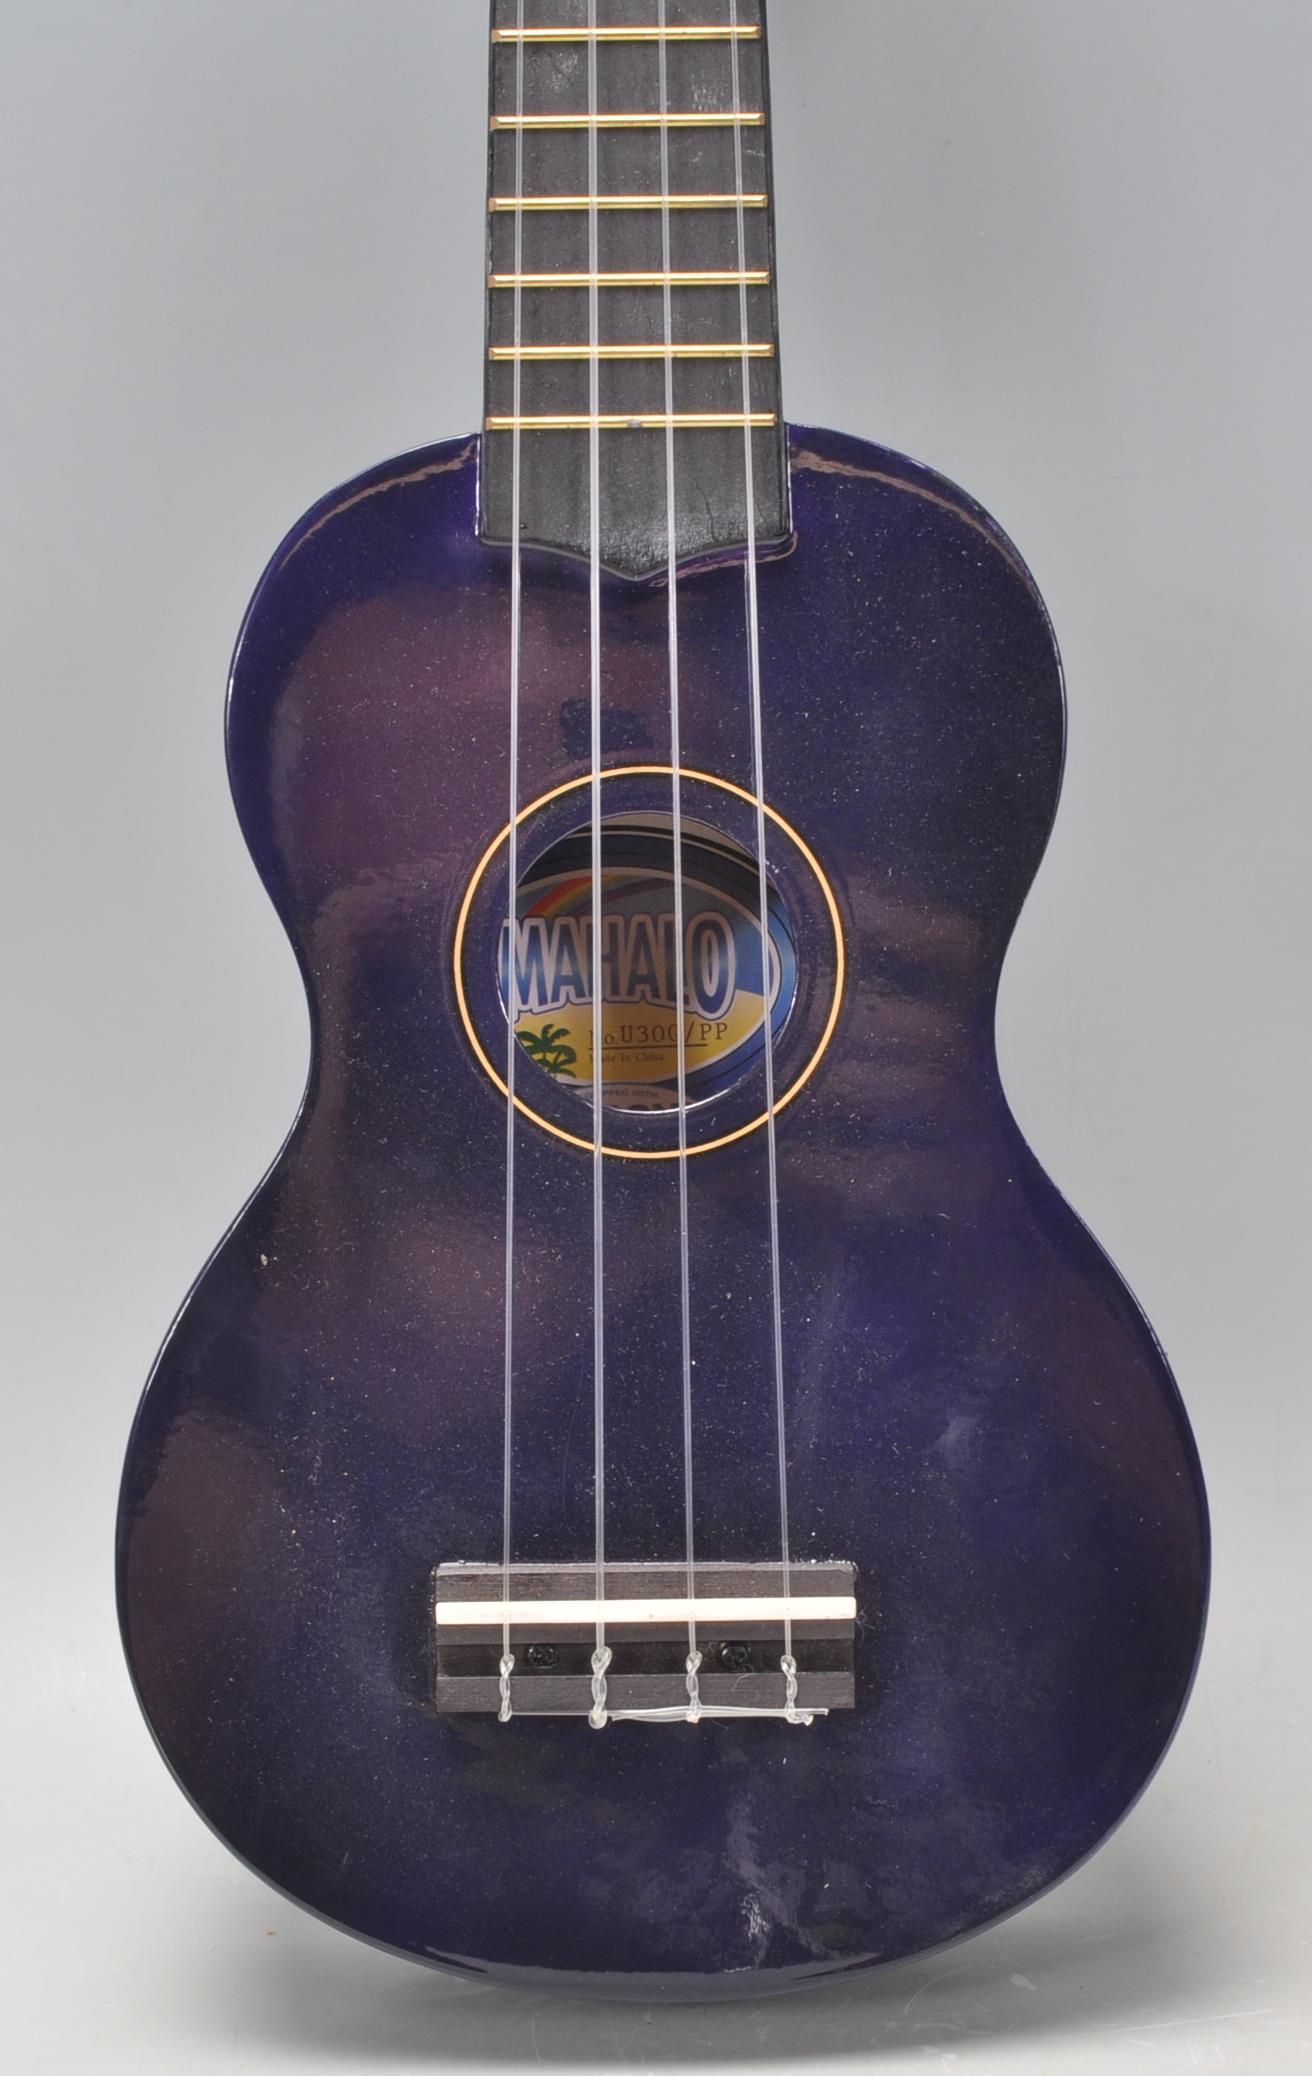 A good Mahalo made four string ukulele finished in blue. 52cm long. - Image 4 of 9